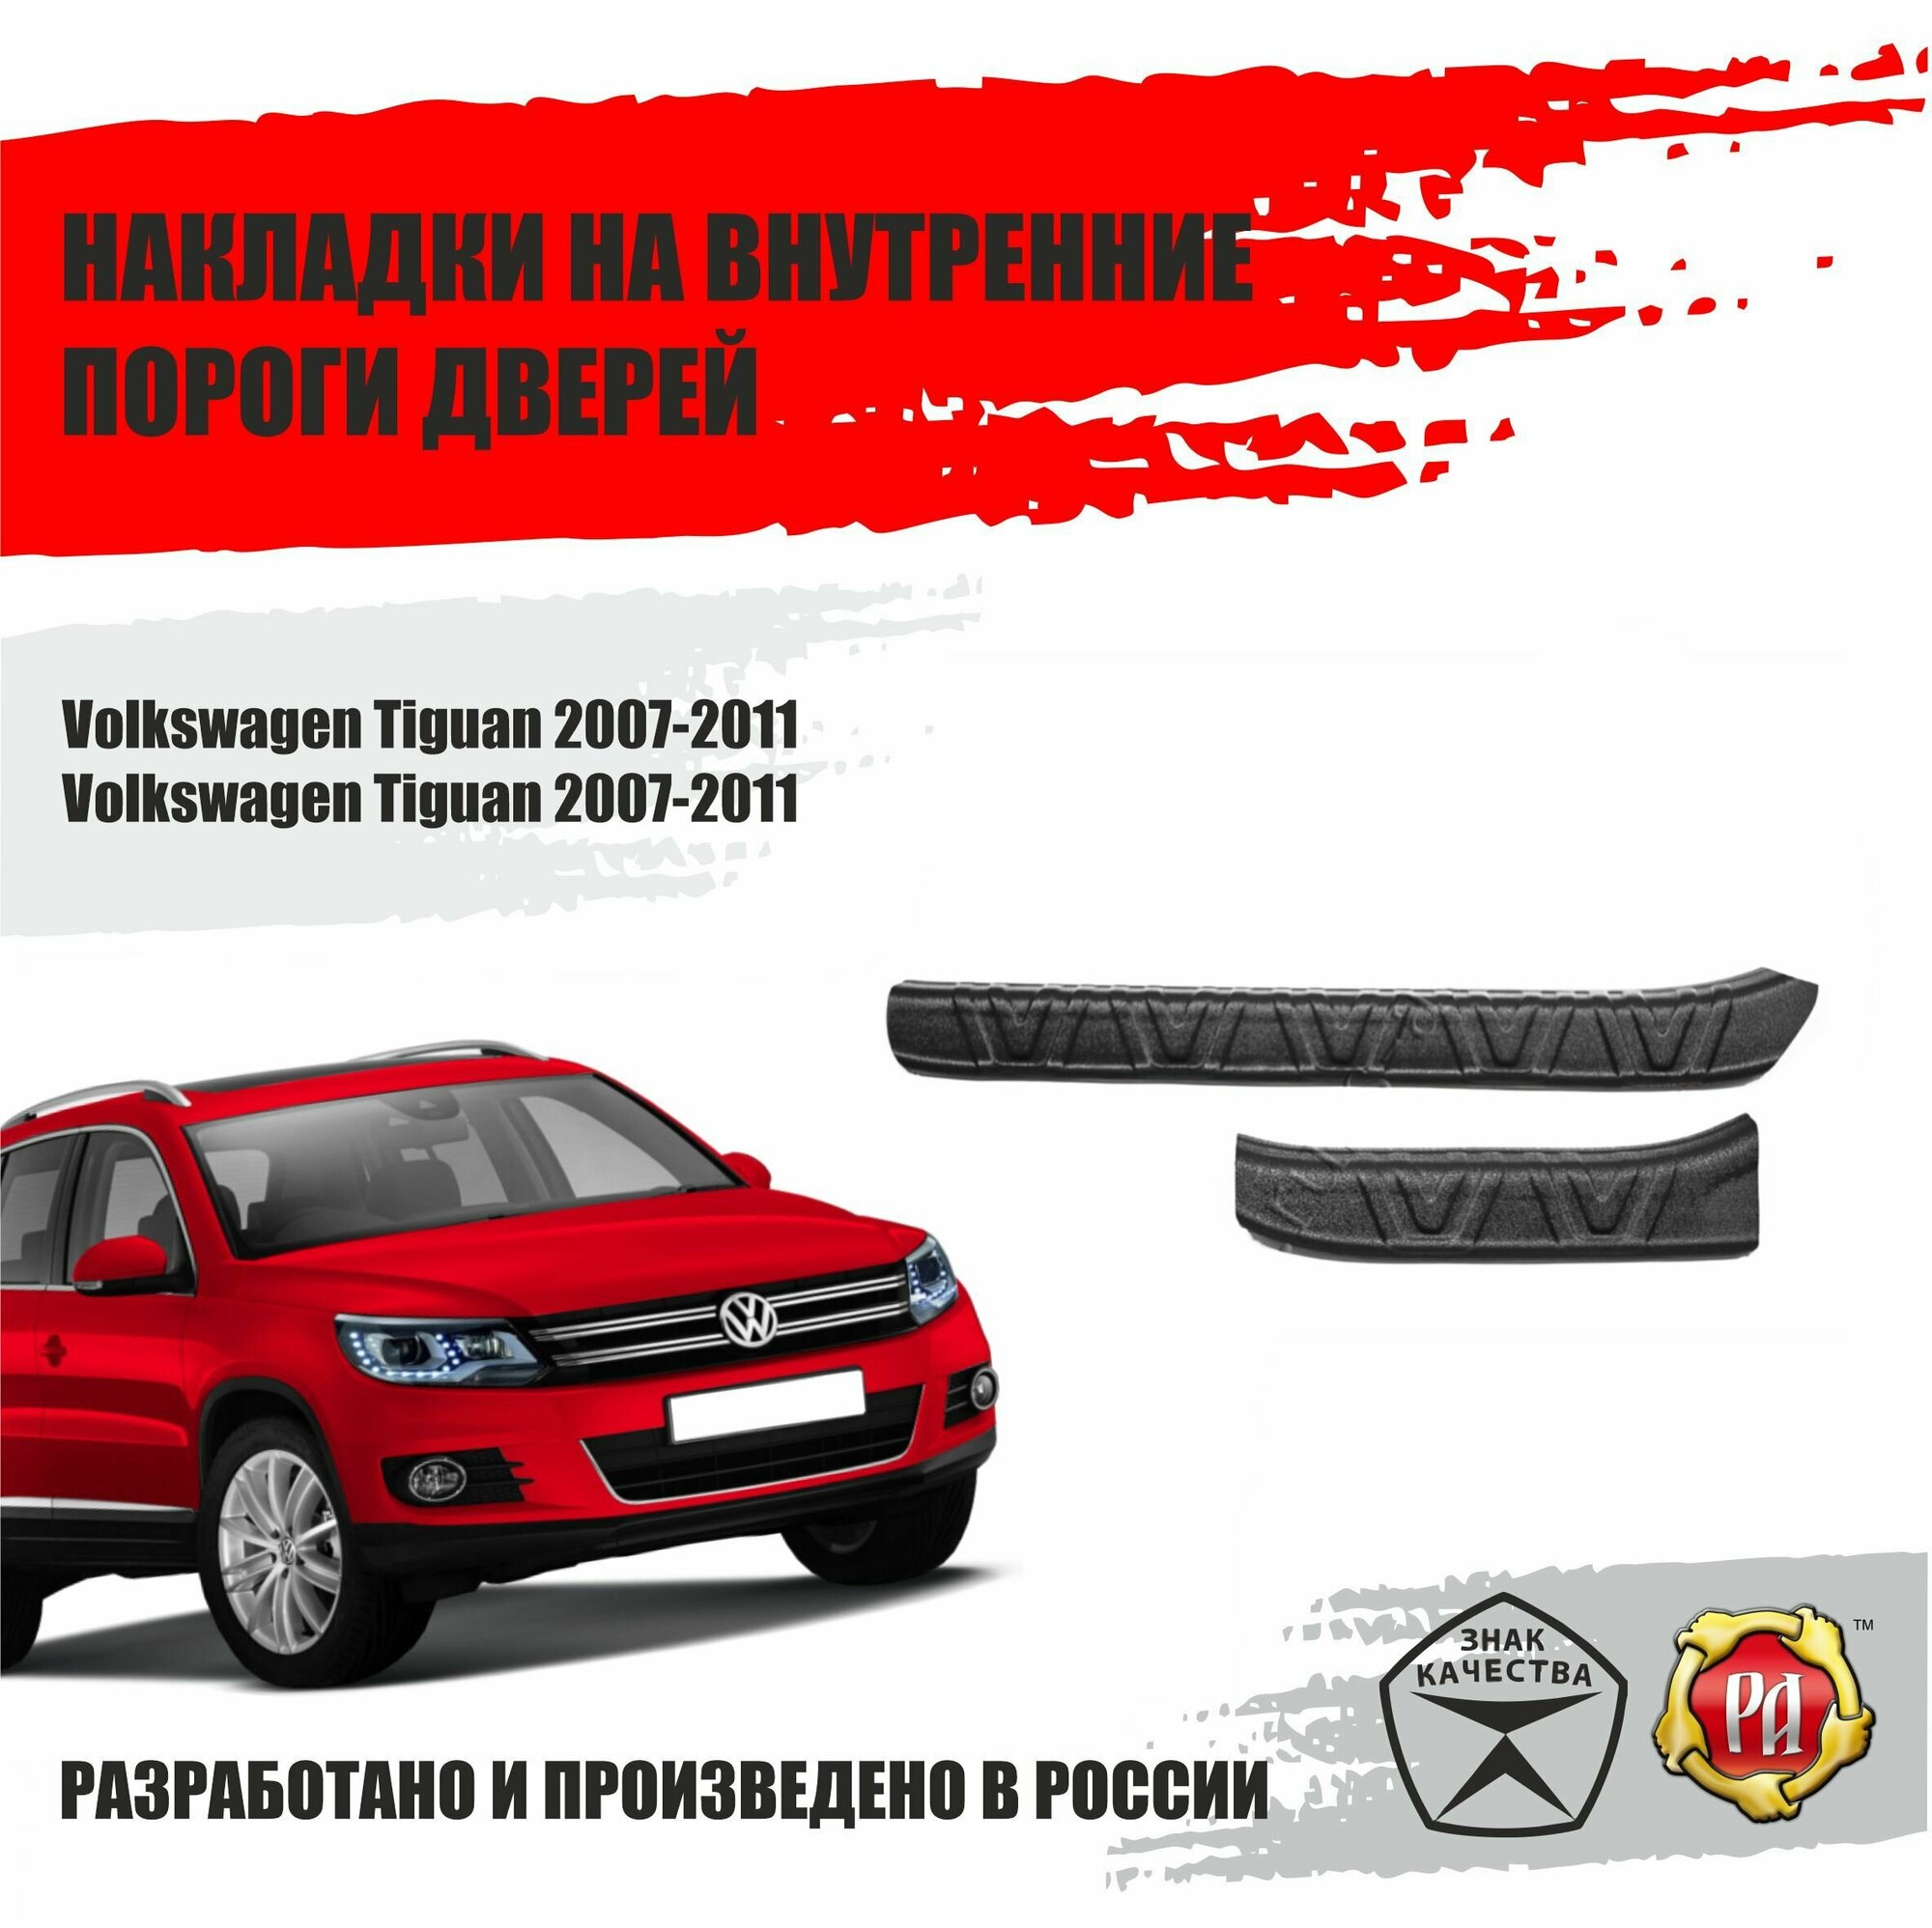 Накладки на пороги дверей Русская Артель Volkswagen Tiguan 2007